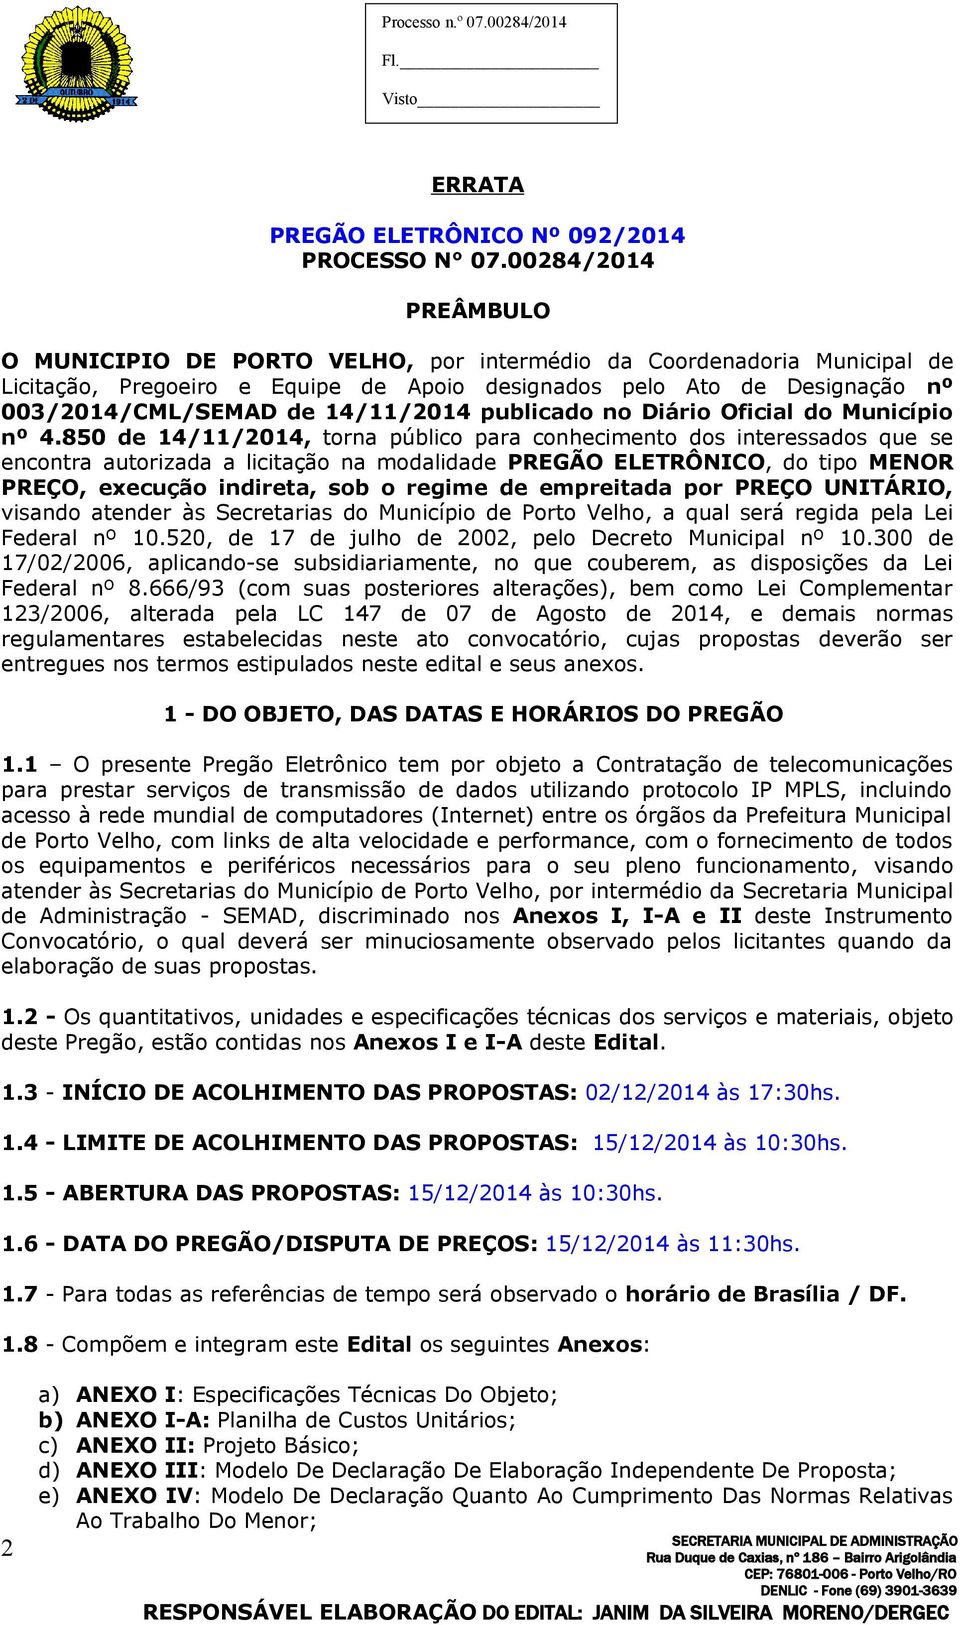 14/11/2014 publicado no Diário Oficial do Município nº 4.